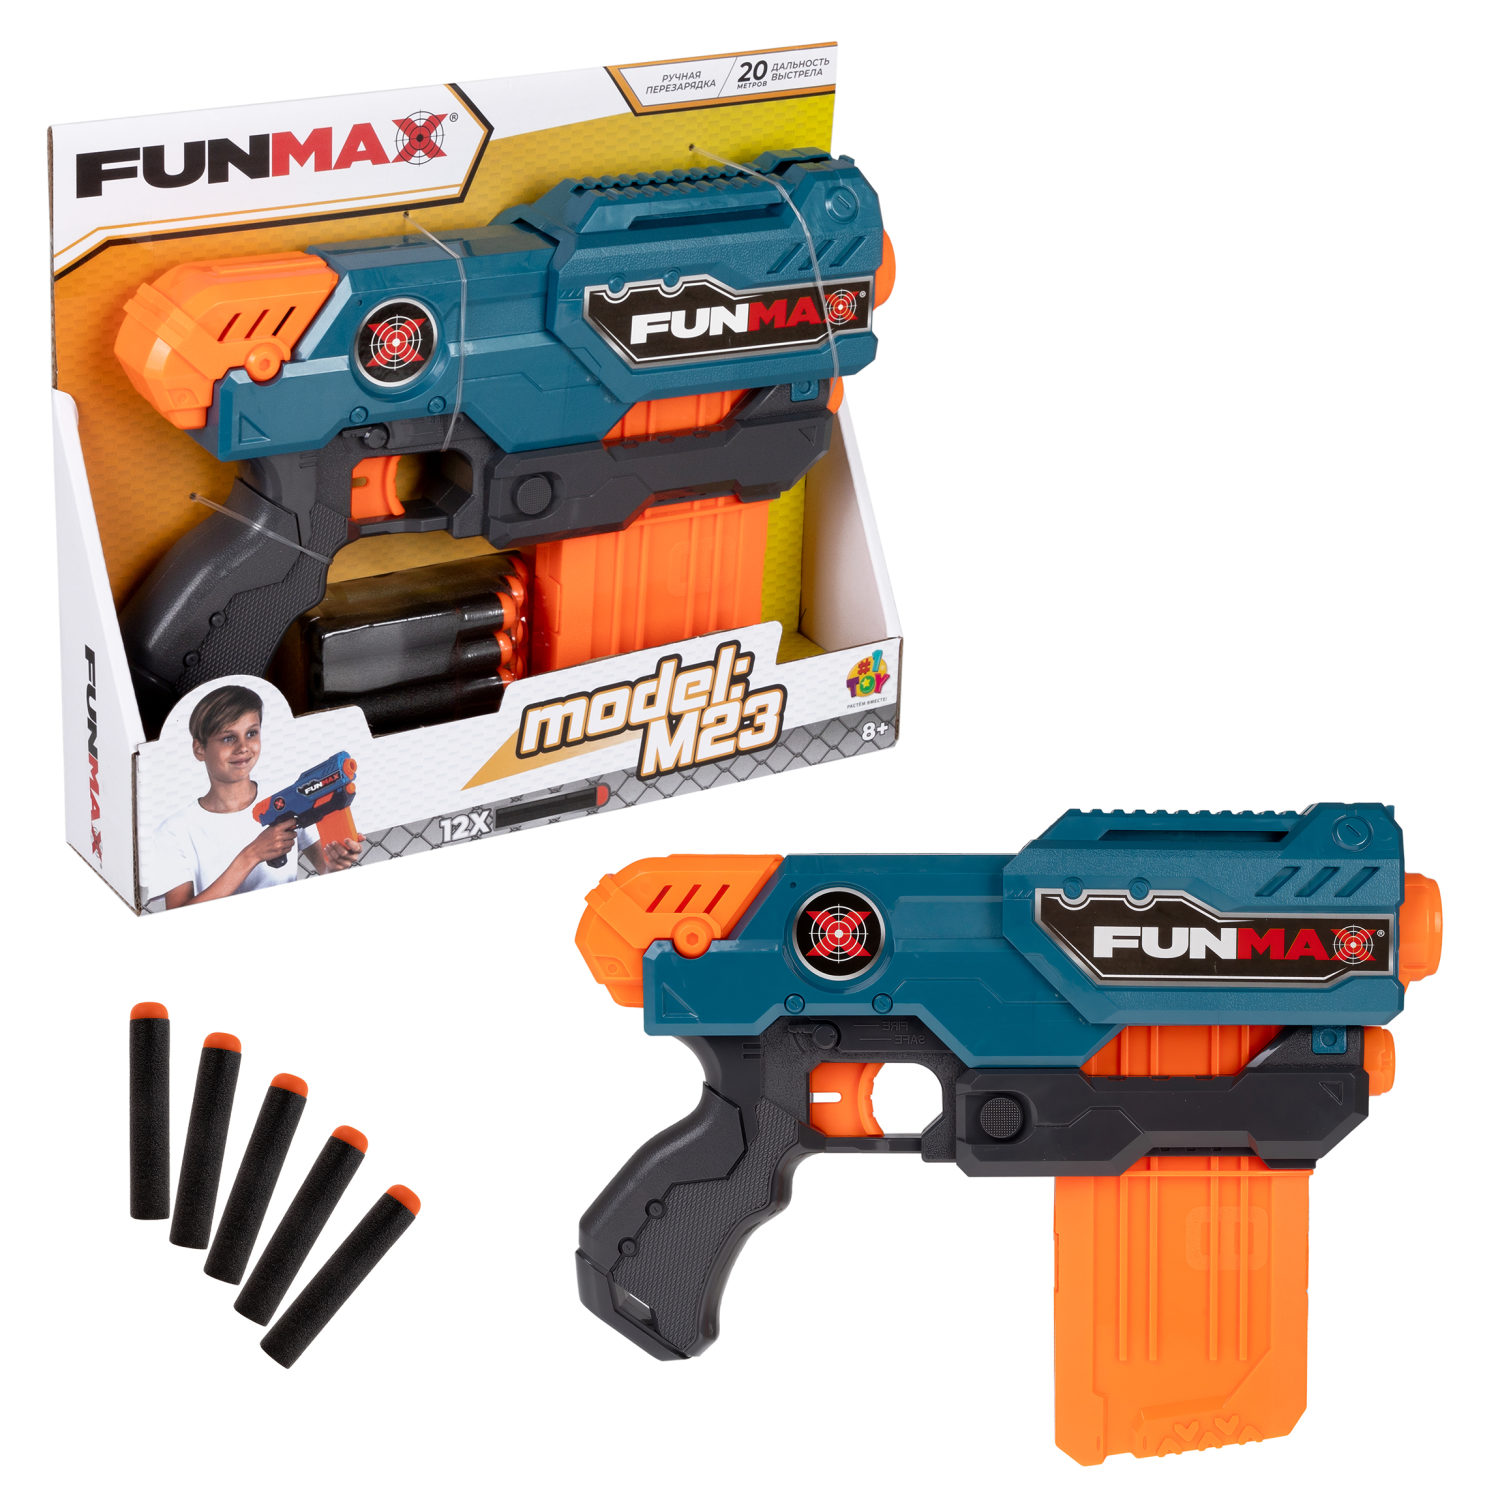 Бластер игрушечный 1toy Funmax M23 механич, обойма на 10 выстрелов, 12 EVA снарядов